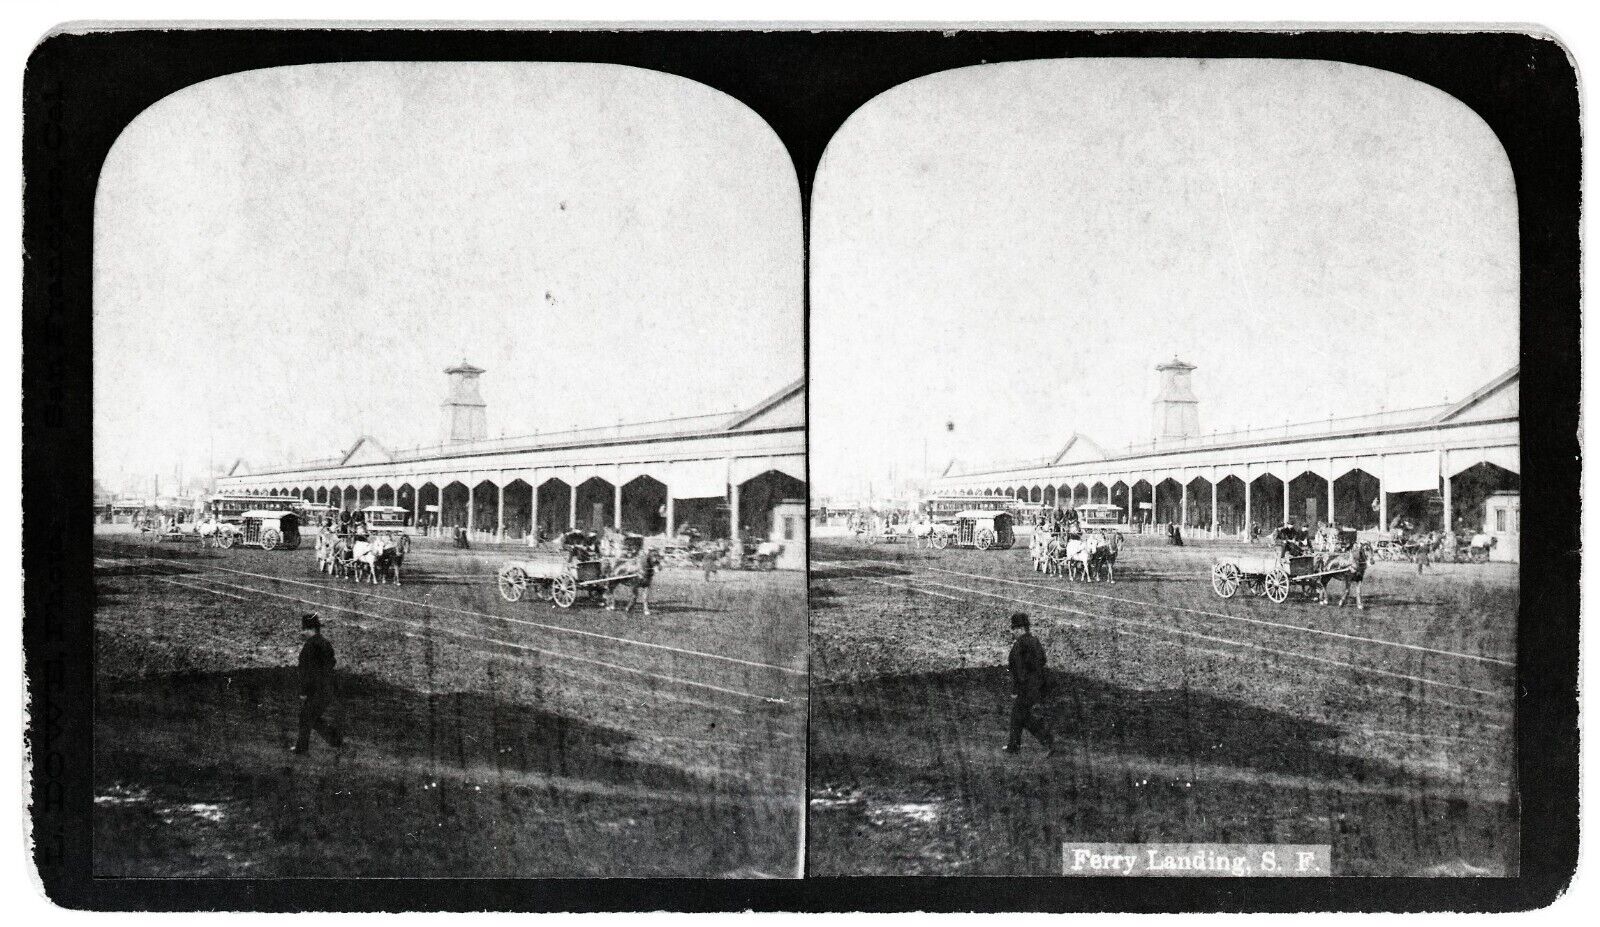 c.1880s SAN FRANCISCO EMBARCADERO ORIGINAL FERRY BUILDING,HORSES&WAGONS~NEGATIVE